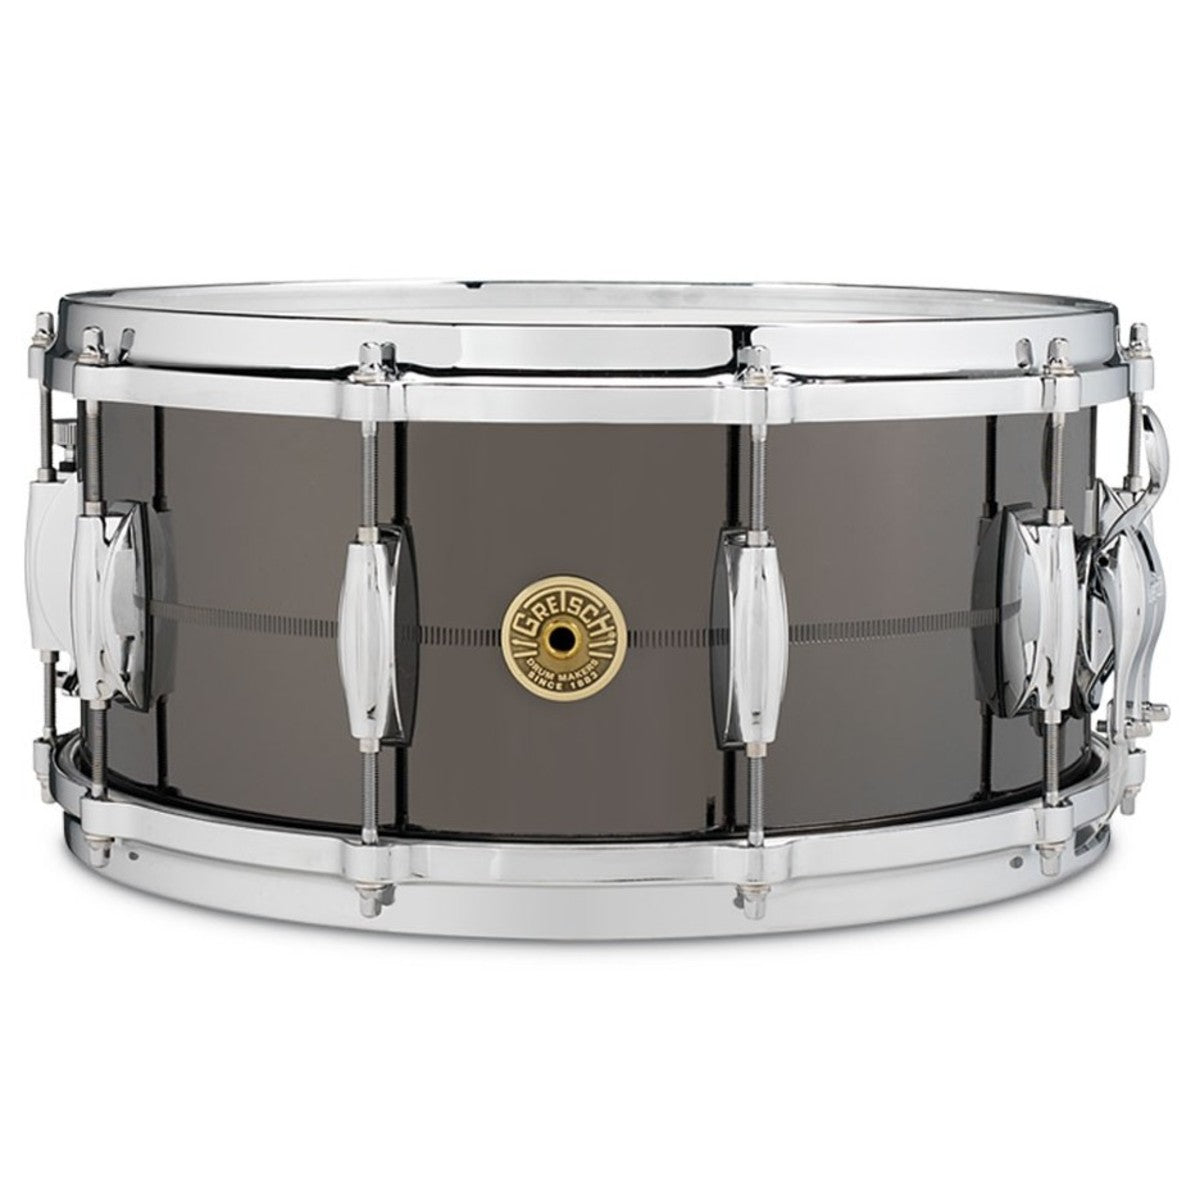 Gretsch USA Solid Steel 14"x6.5" Snare Drum